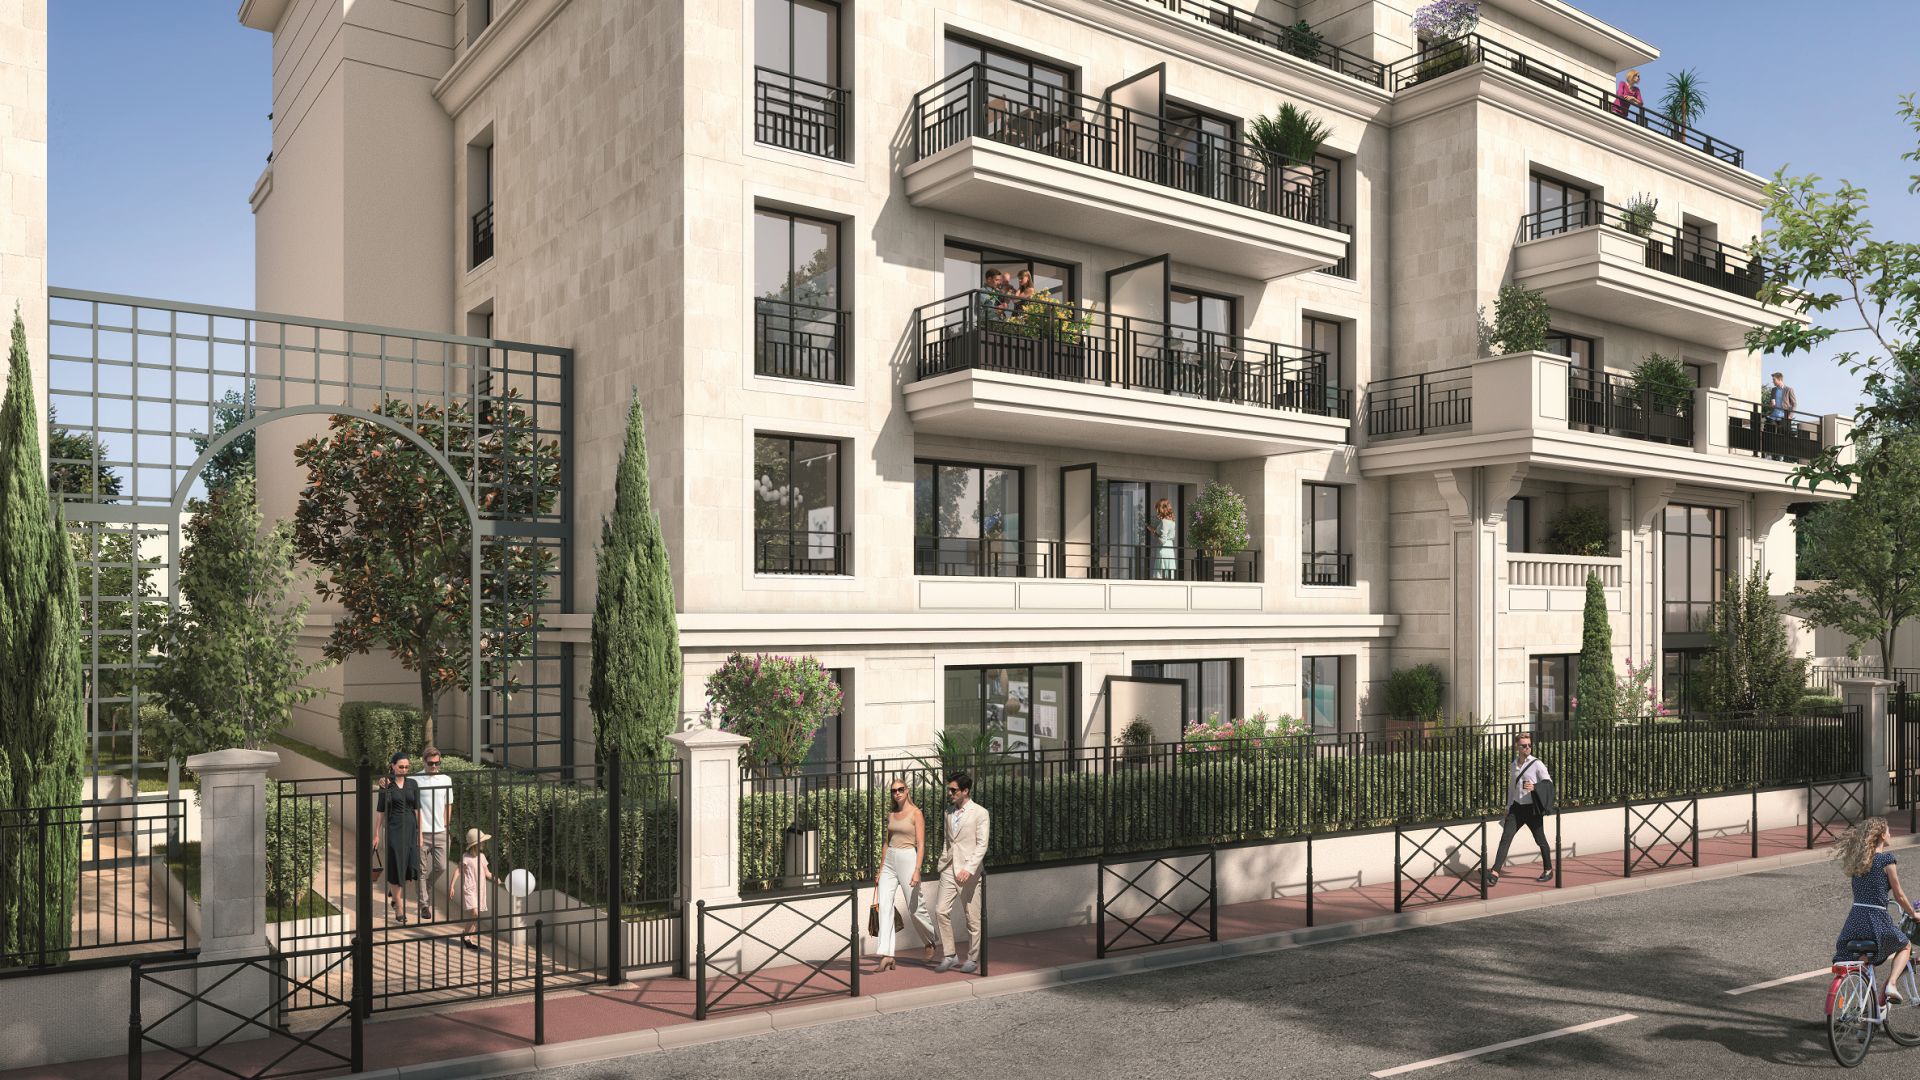 Greencity immobilier - achat appartements neufs du T1 au T5 - Résidence Les Jardins de l'Alma - 94100 Saint-Maur-des-Fossés